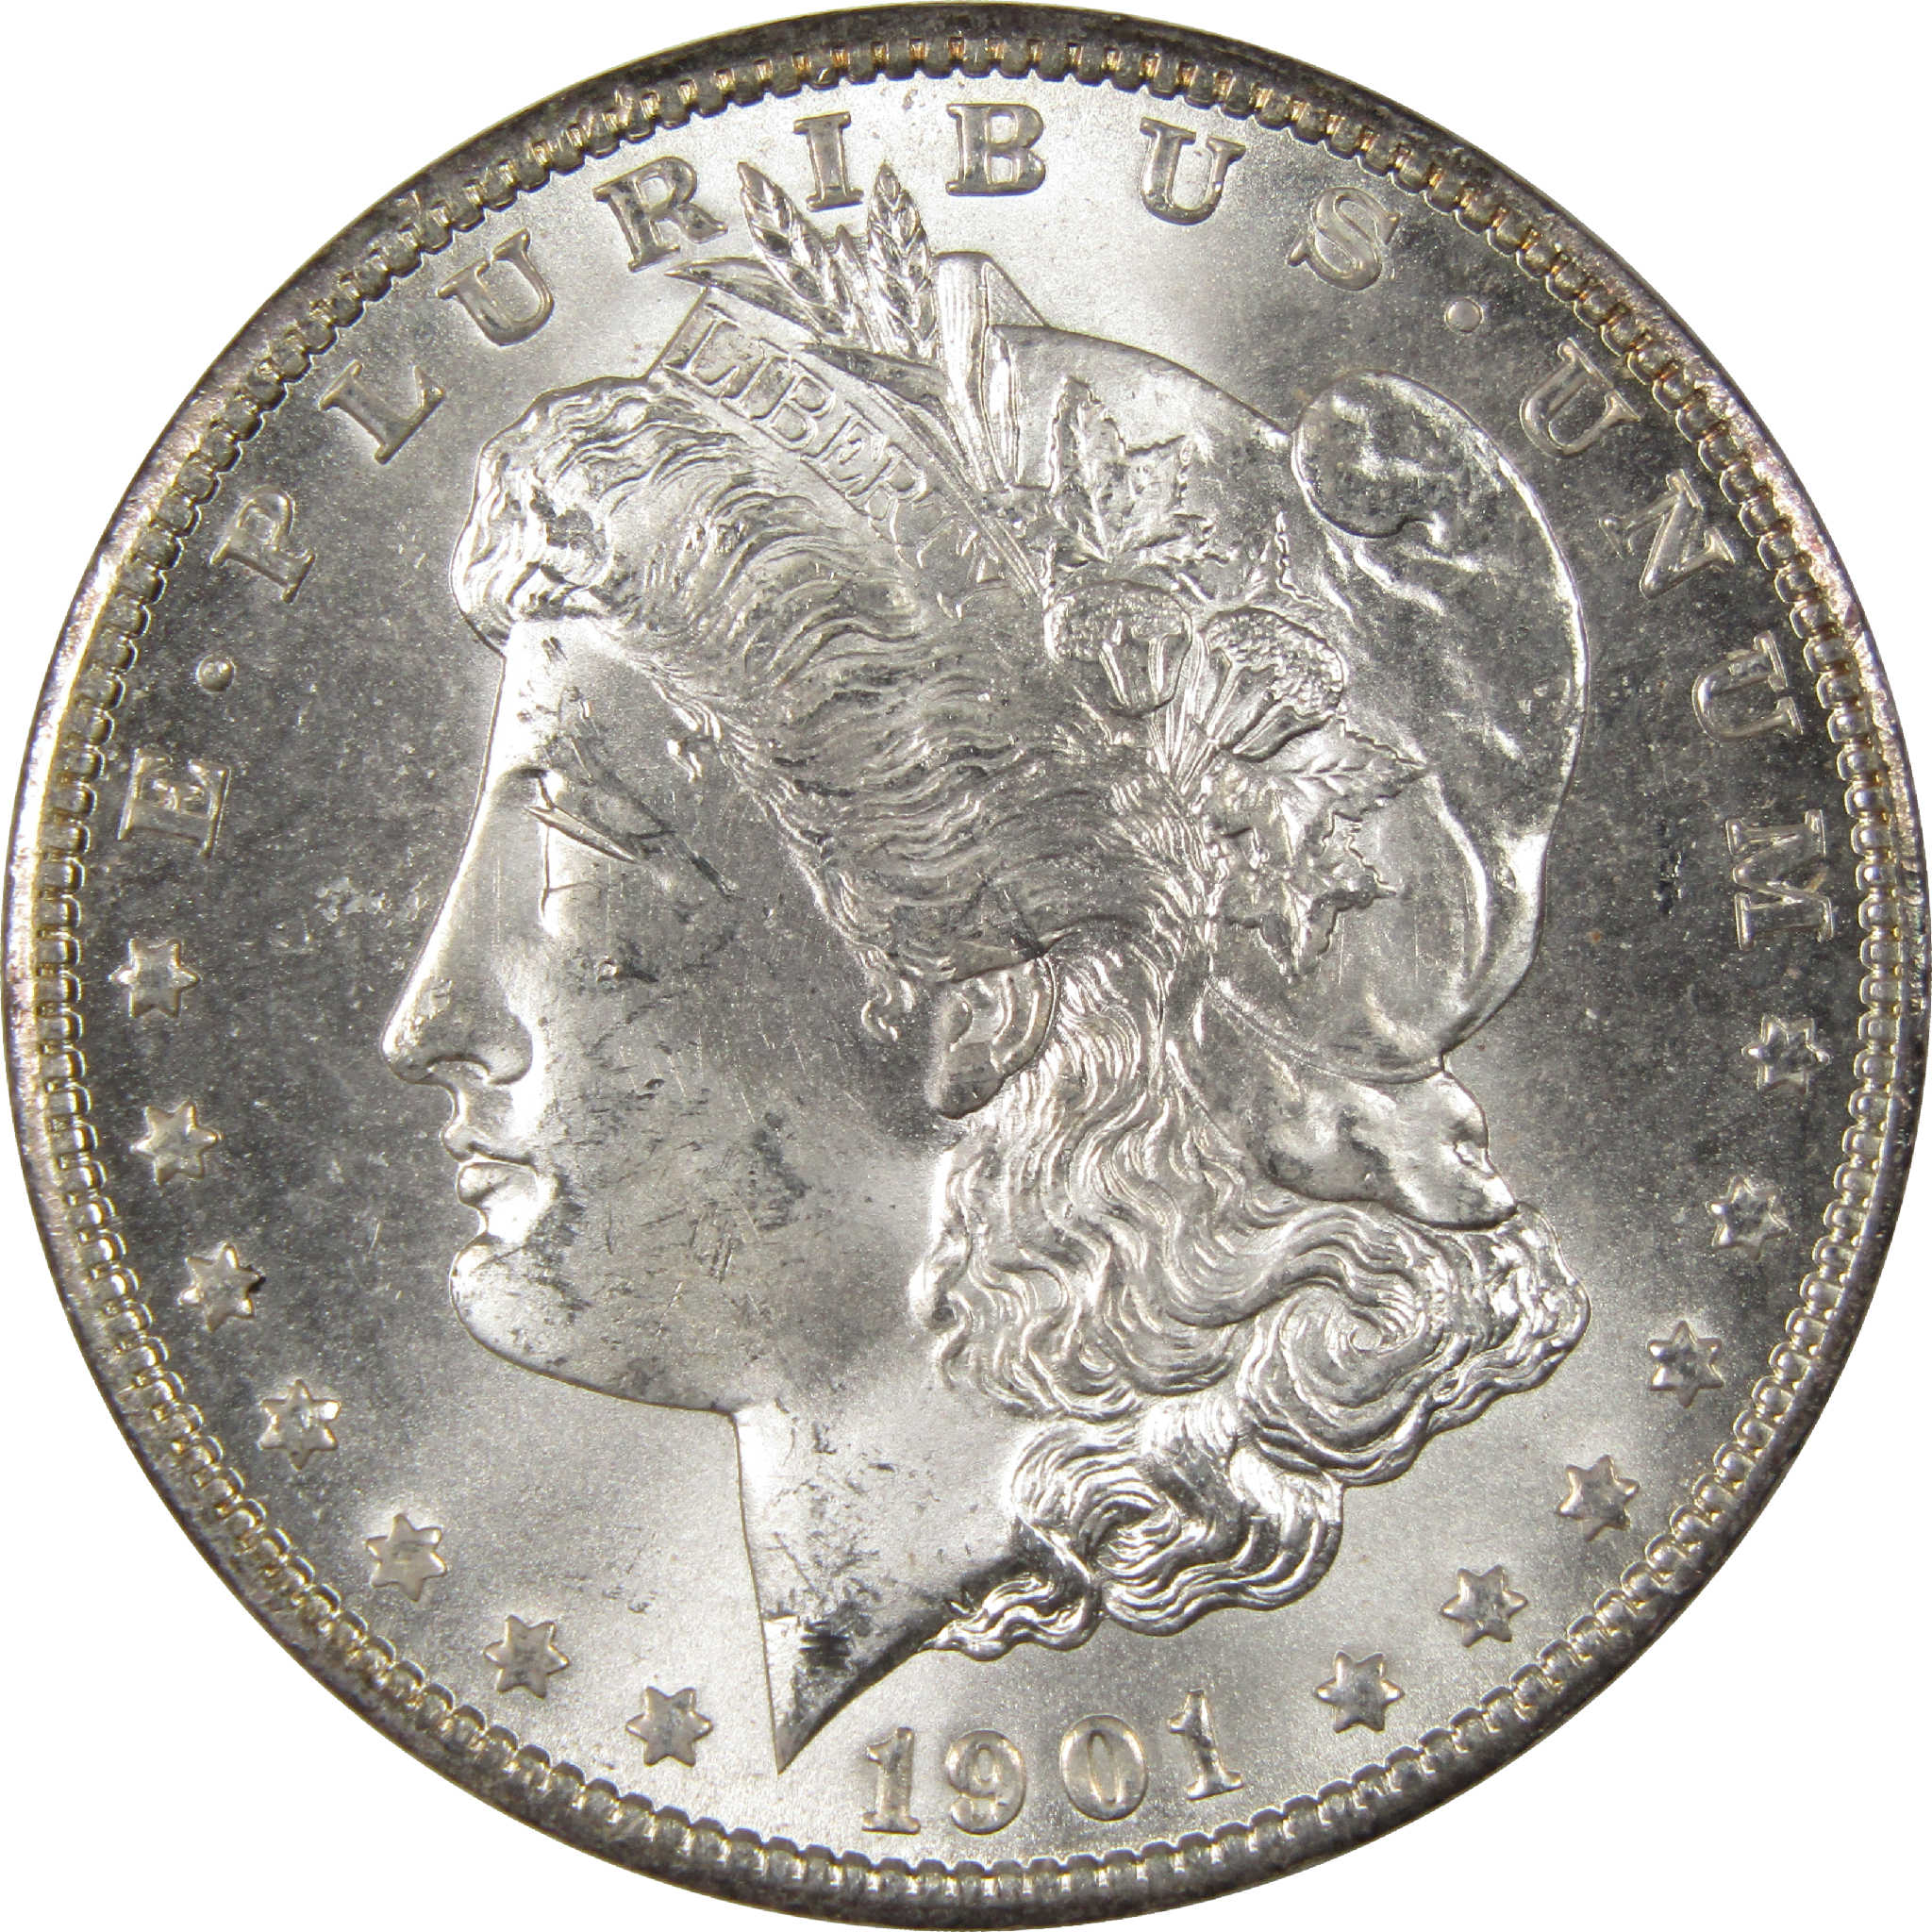 1901 O Morgan Dollar Uncirculated Silver $1 Coin - Morgan coin - Morgan silver dollar - Morgan silver dollar for sale - Profile Coins &amp; Collectibles